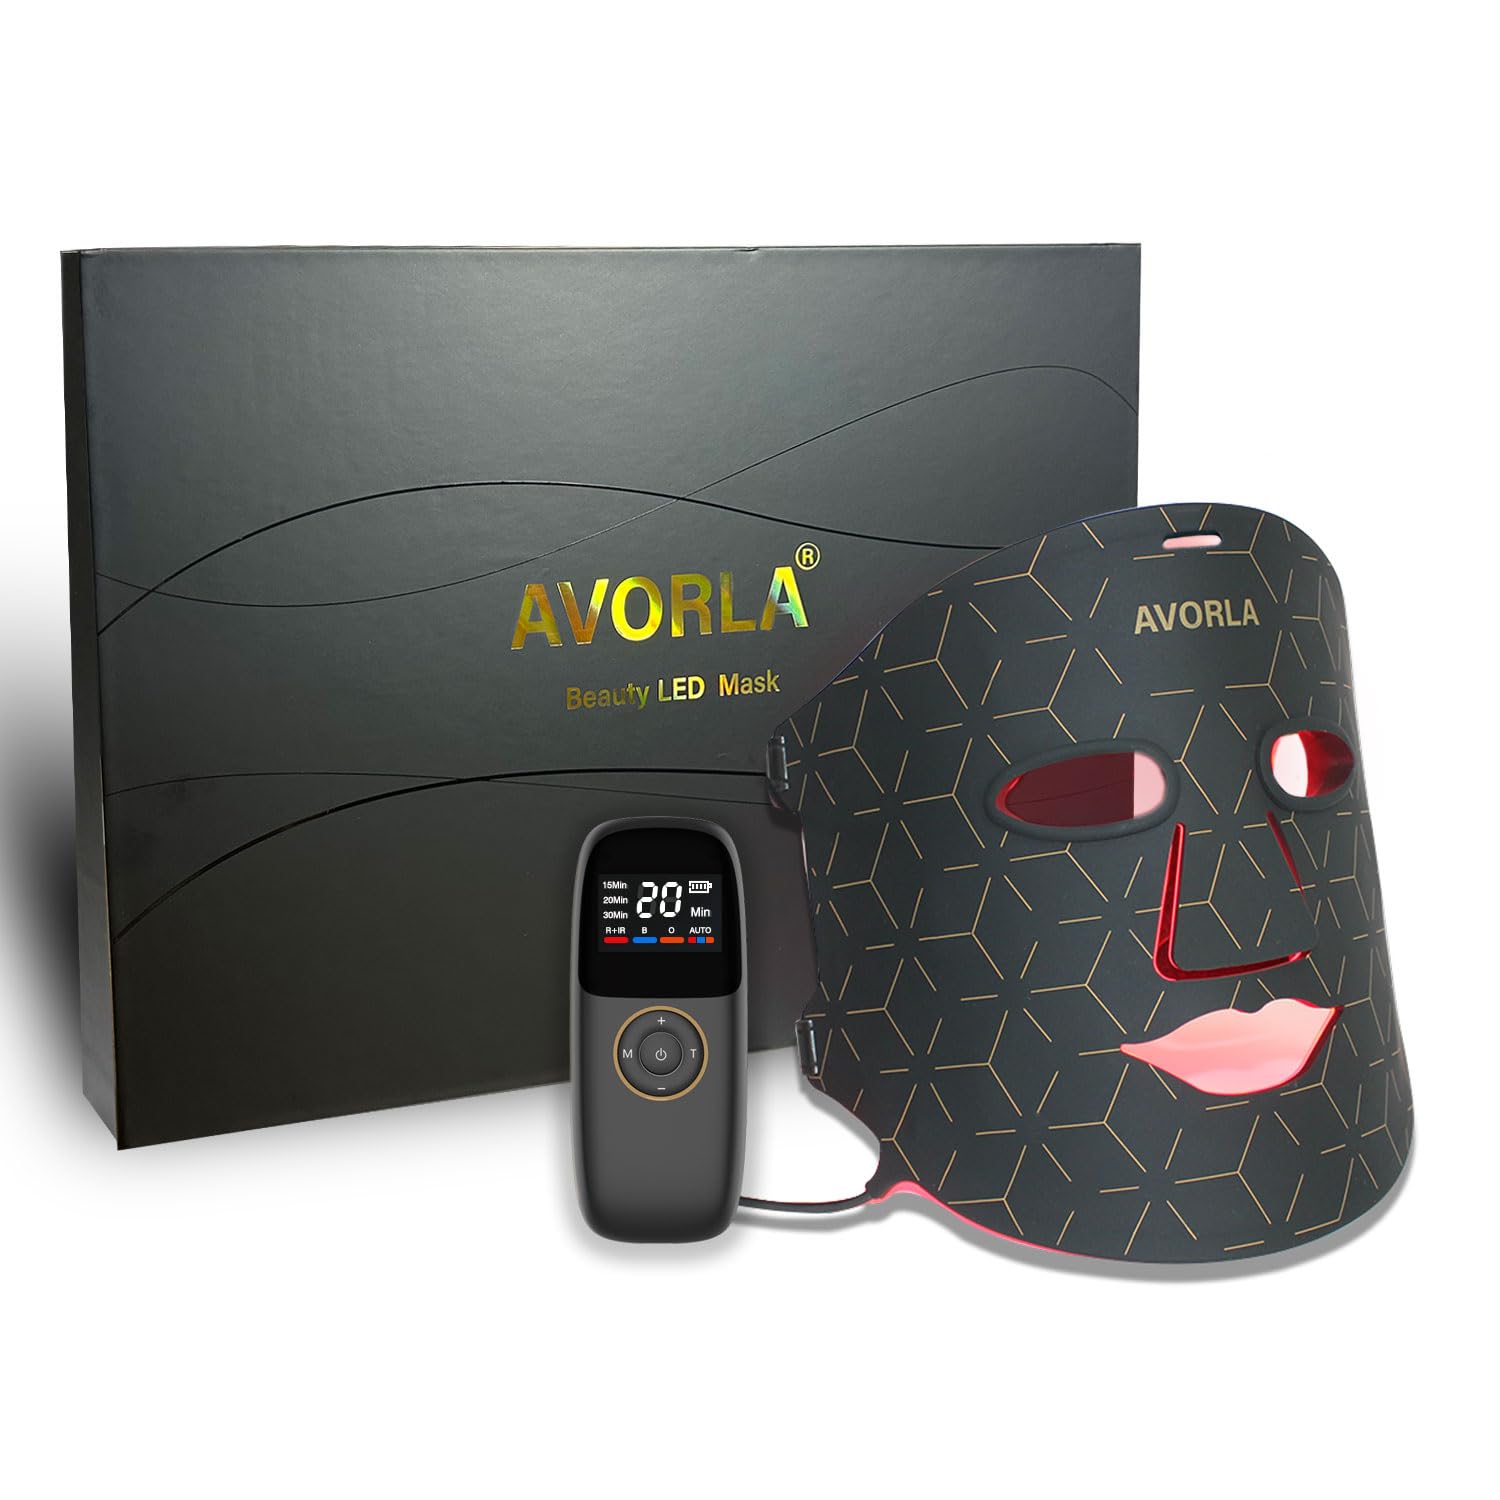 Avorla Beauty LED Mask Review